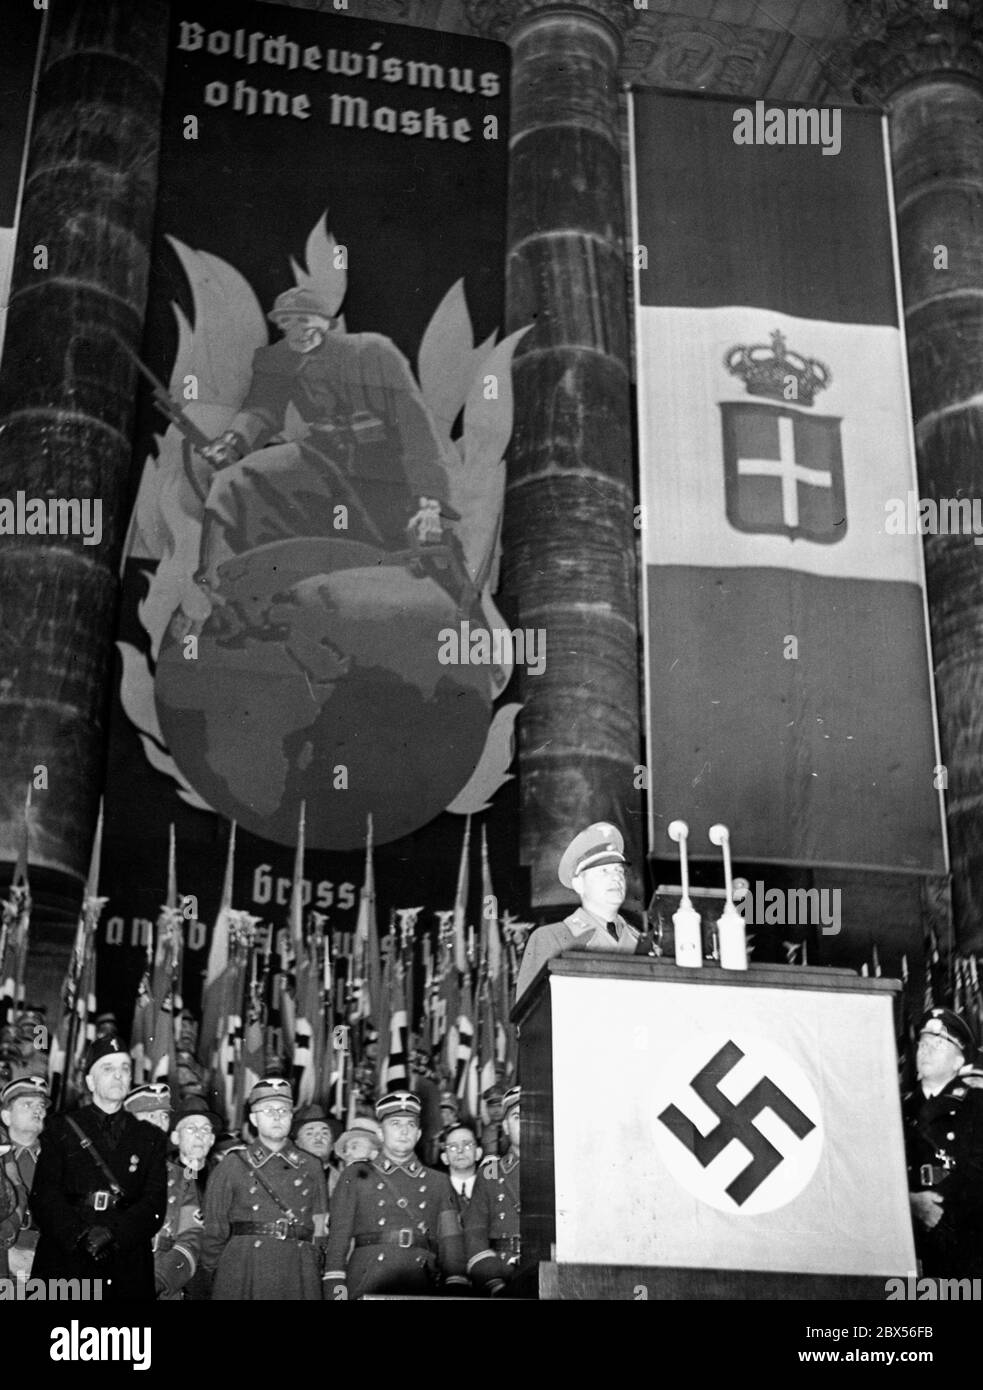 Rally di apertura di una mostra anti-bolscevica nel Reichstag di Berlino con il titolo "Bolschewismus ohne Maske" ("Bolscevismo senza maschera"). Foto Stock